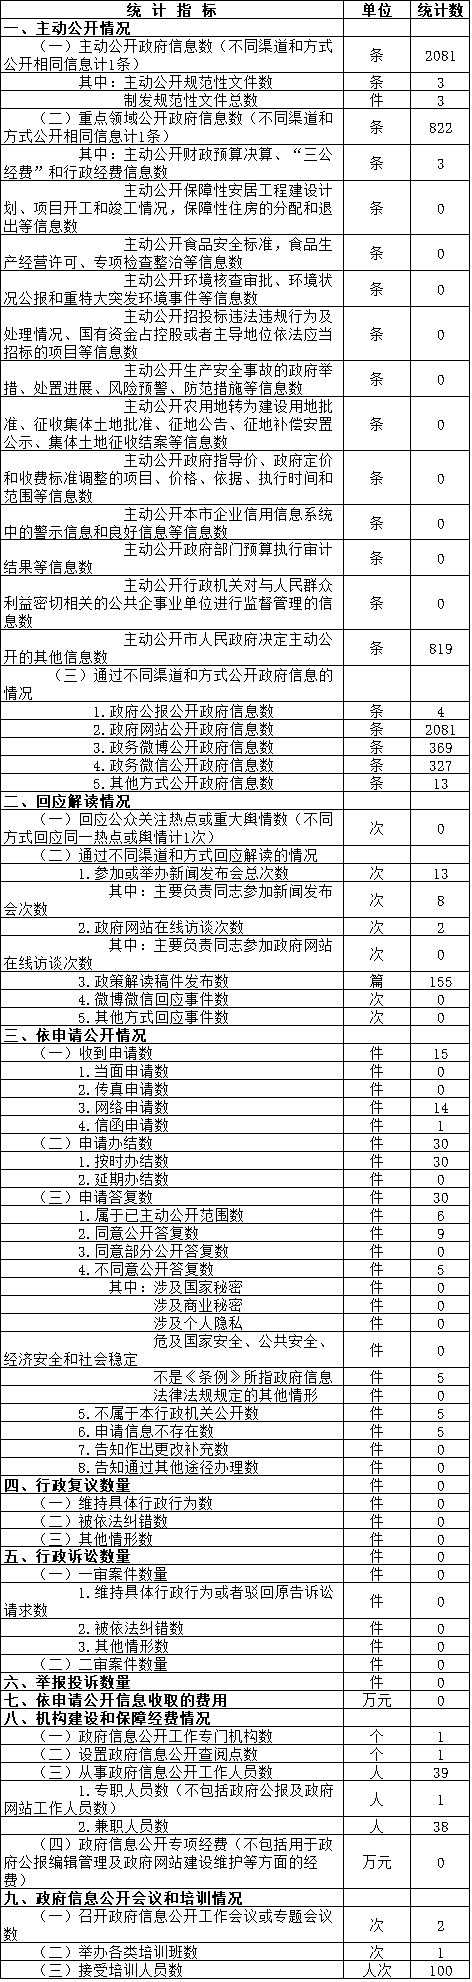 北京市体育局政府信息公开情况统计表(2017年度)